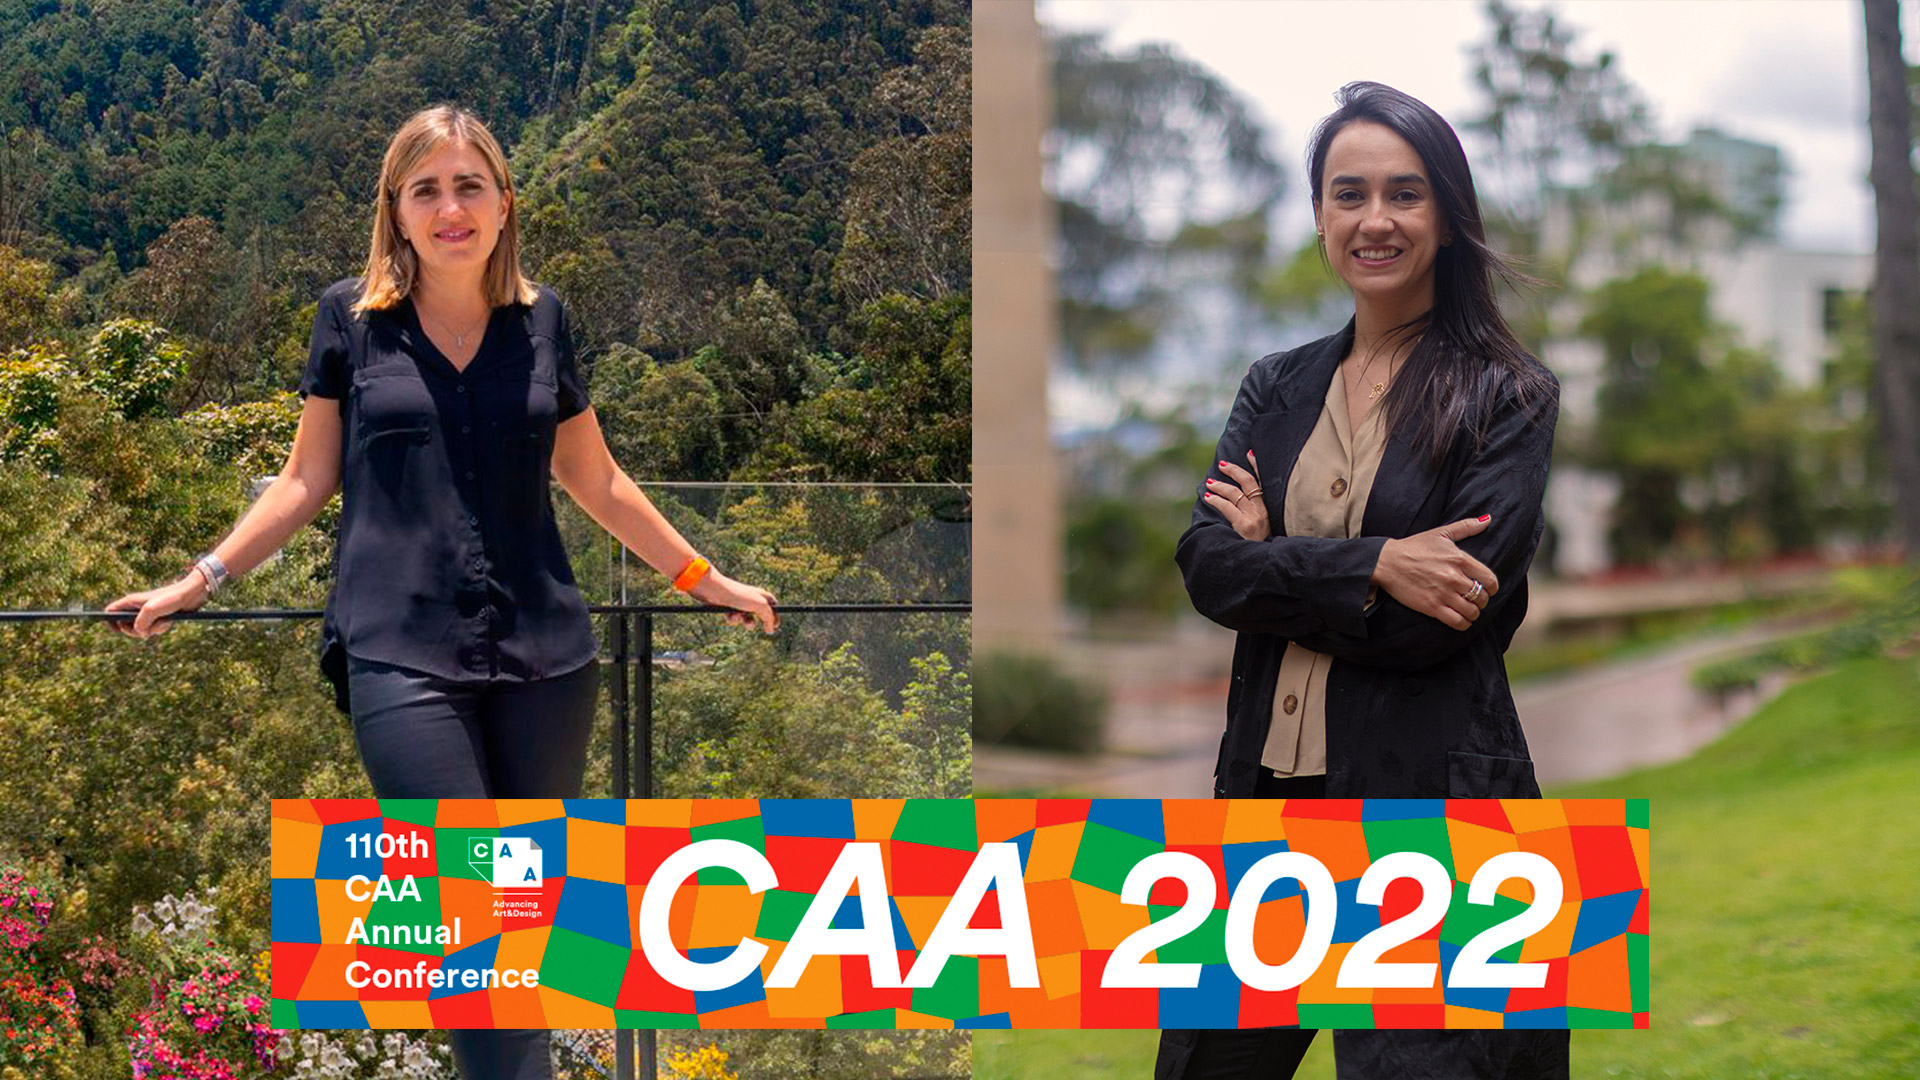 Verónica Uribe y Juanita Solano participarán en la conferencia anual de la College Art Association 2022